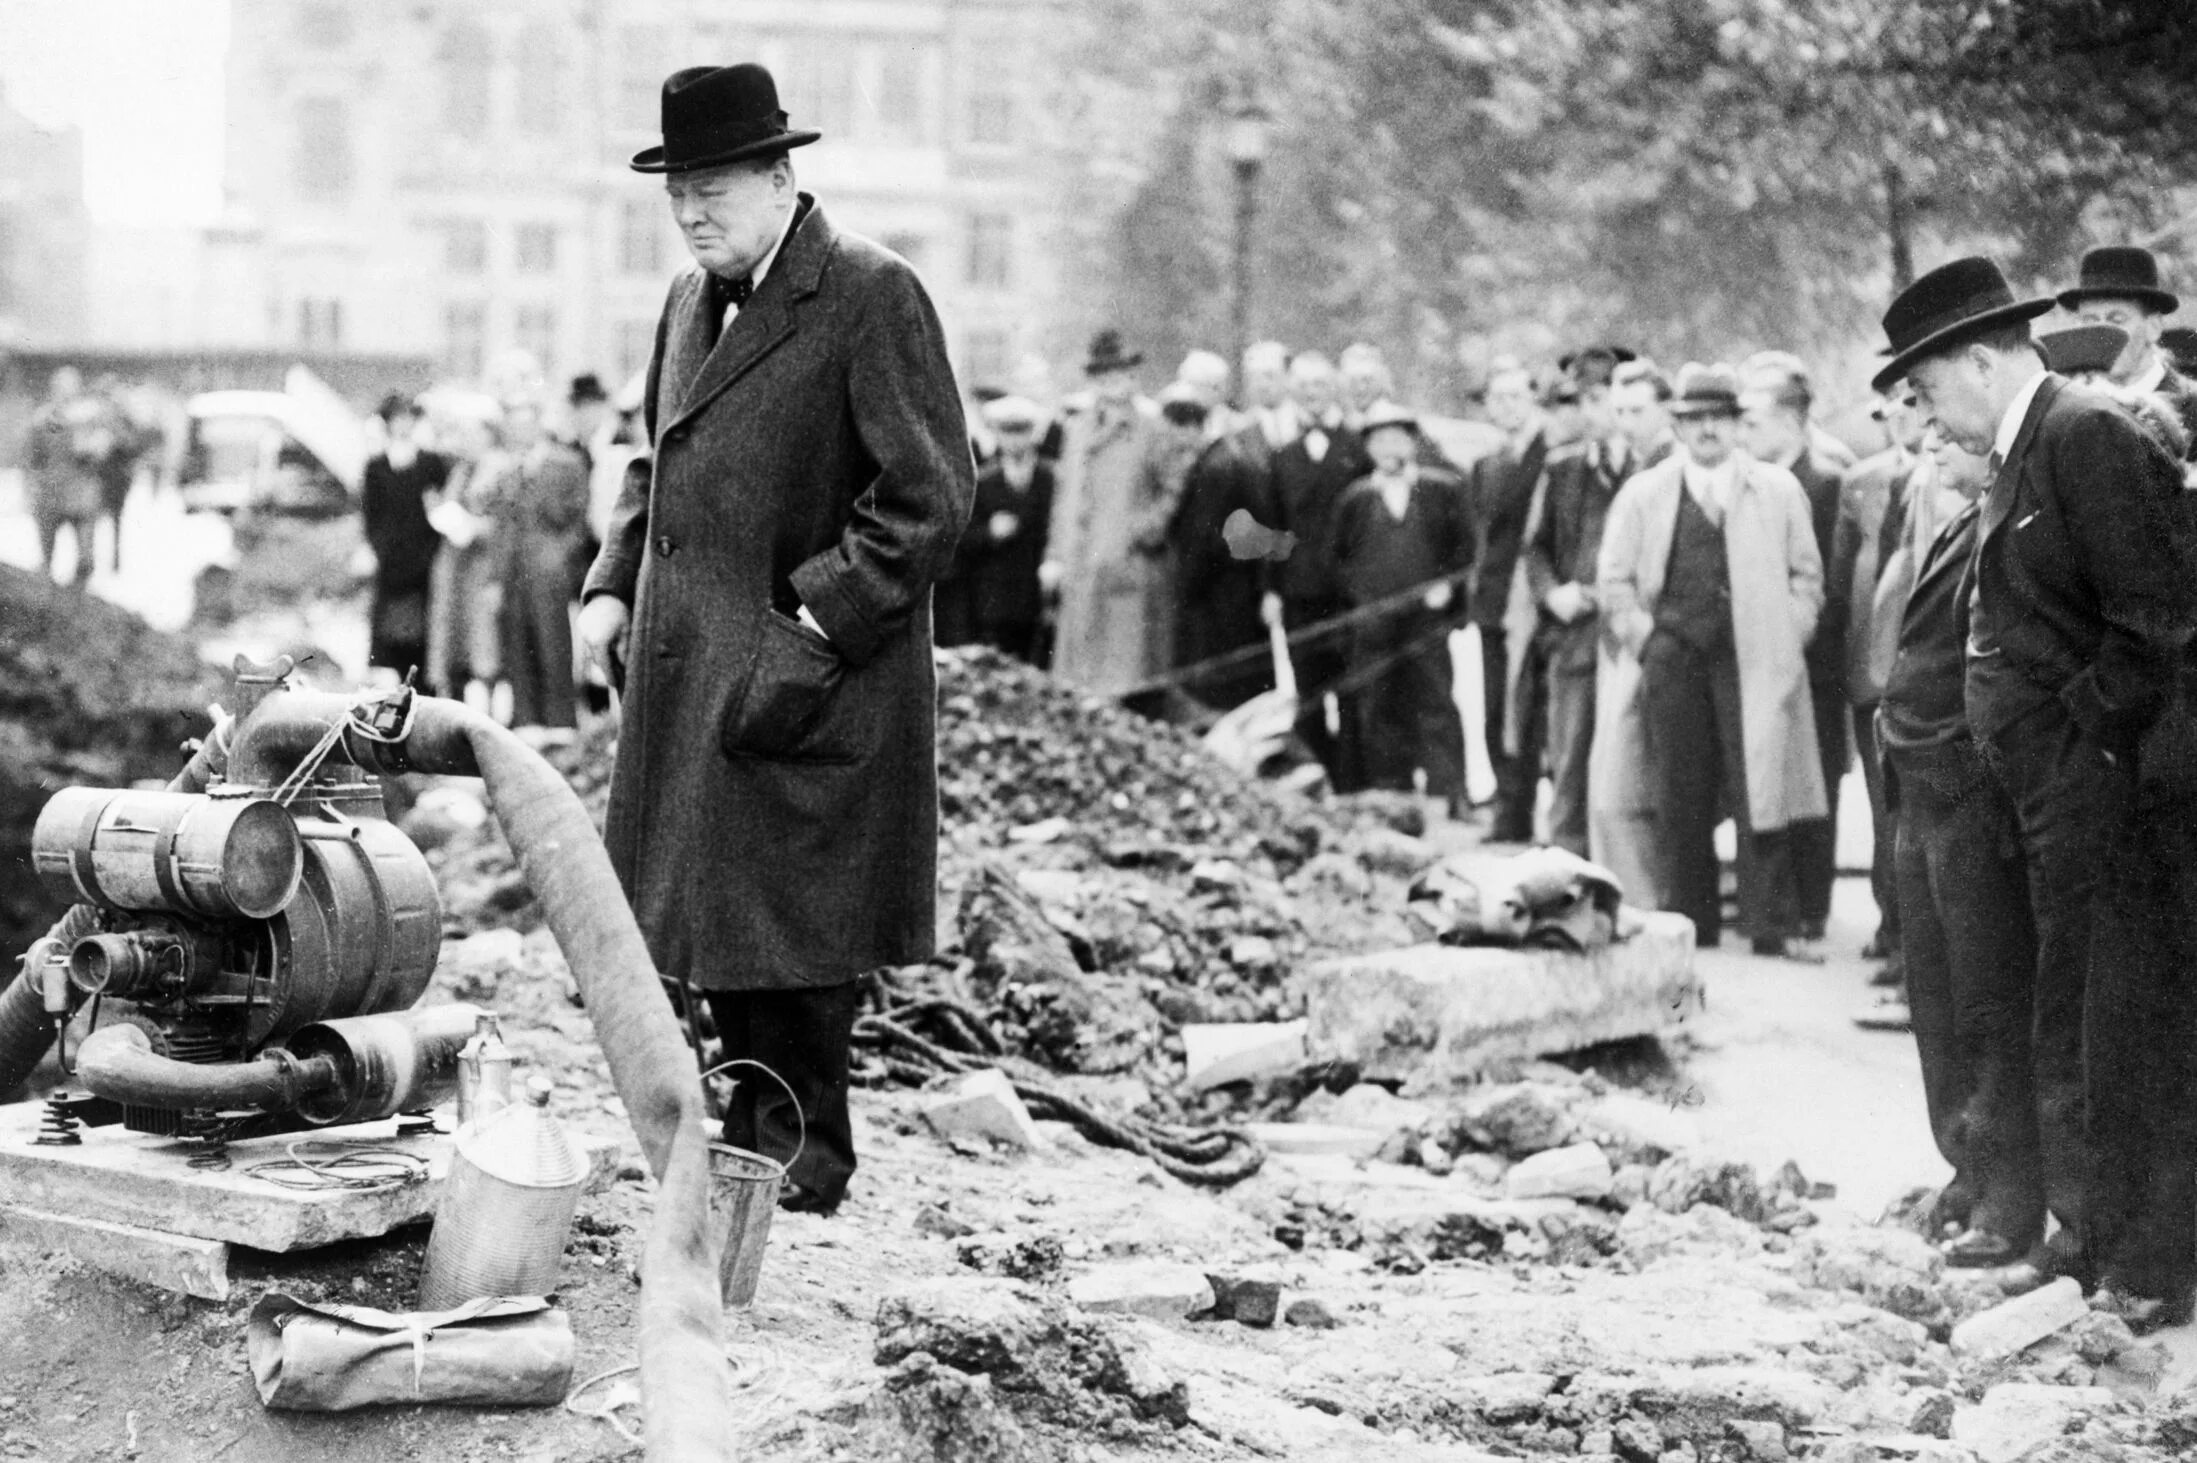 Уинстон Черчилль 1940 Лондон. Бомбардировка Лондона 1940. Черчилль в разбомбленном Лондоне. Бомбежка Лондона в 1940.